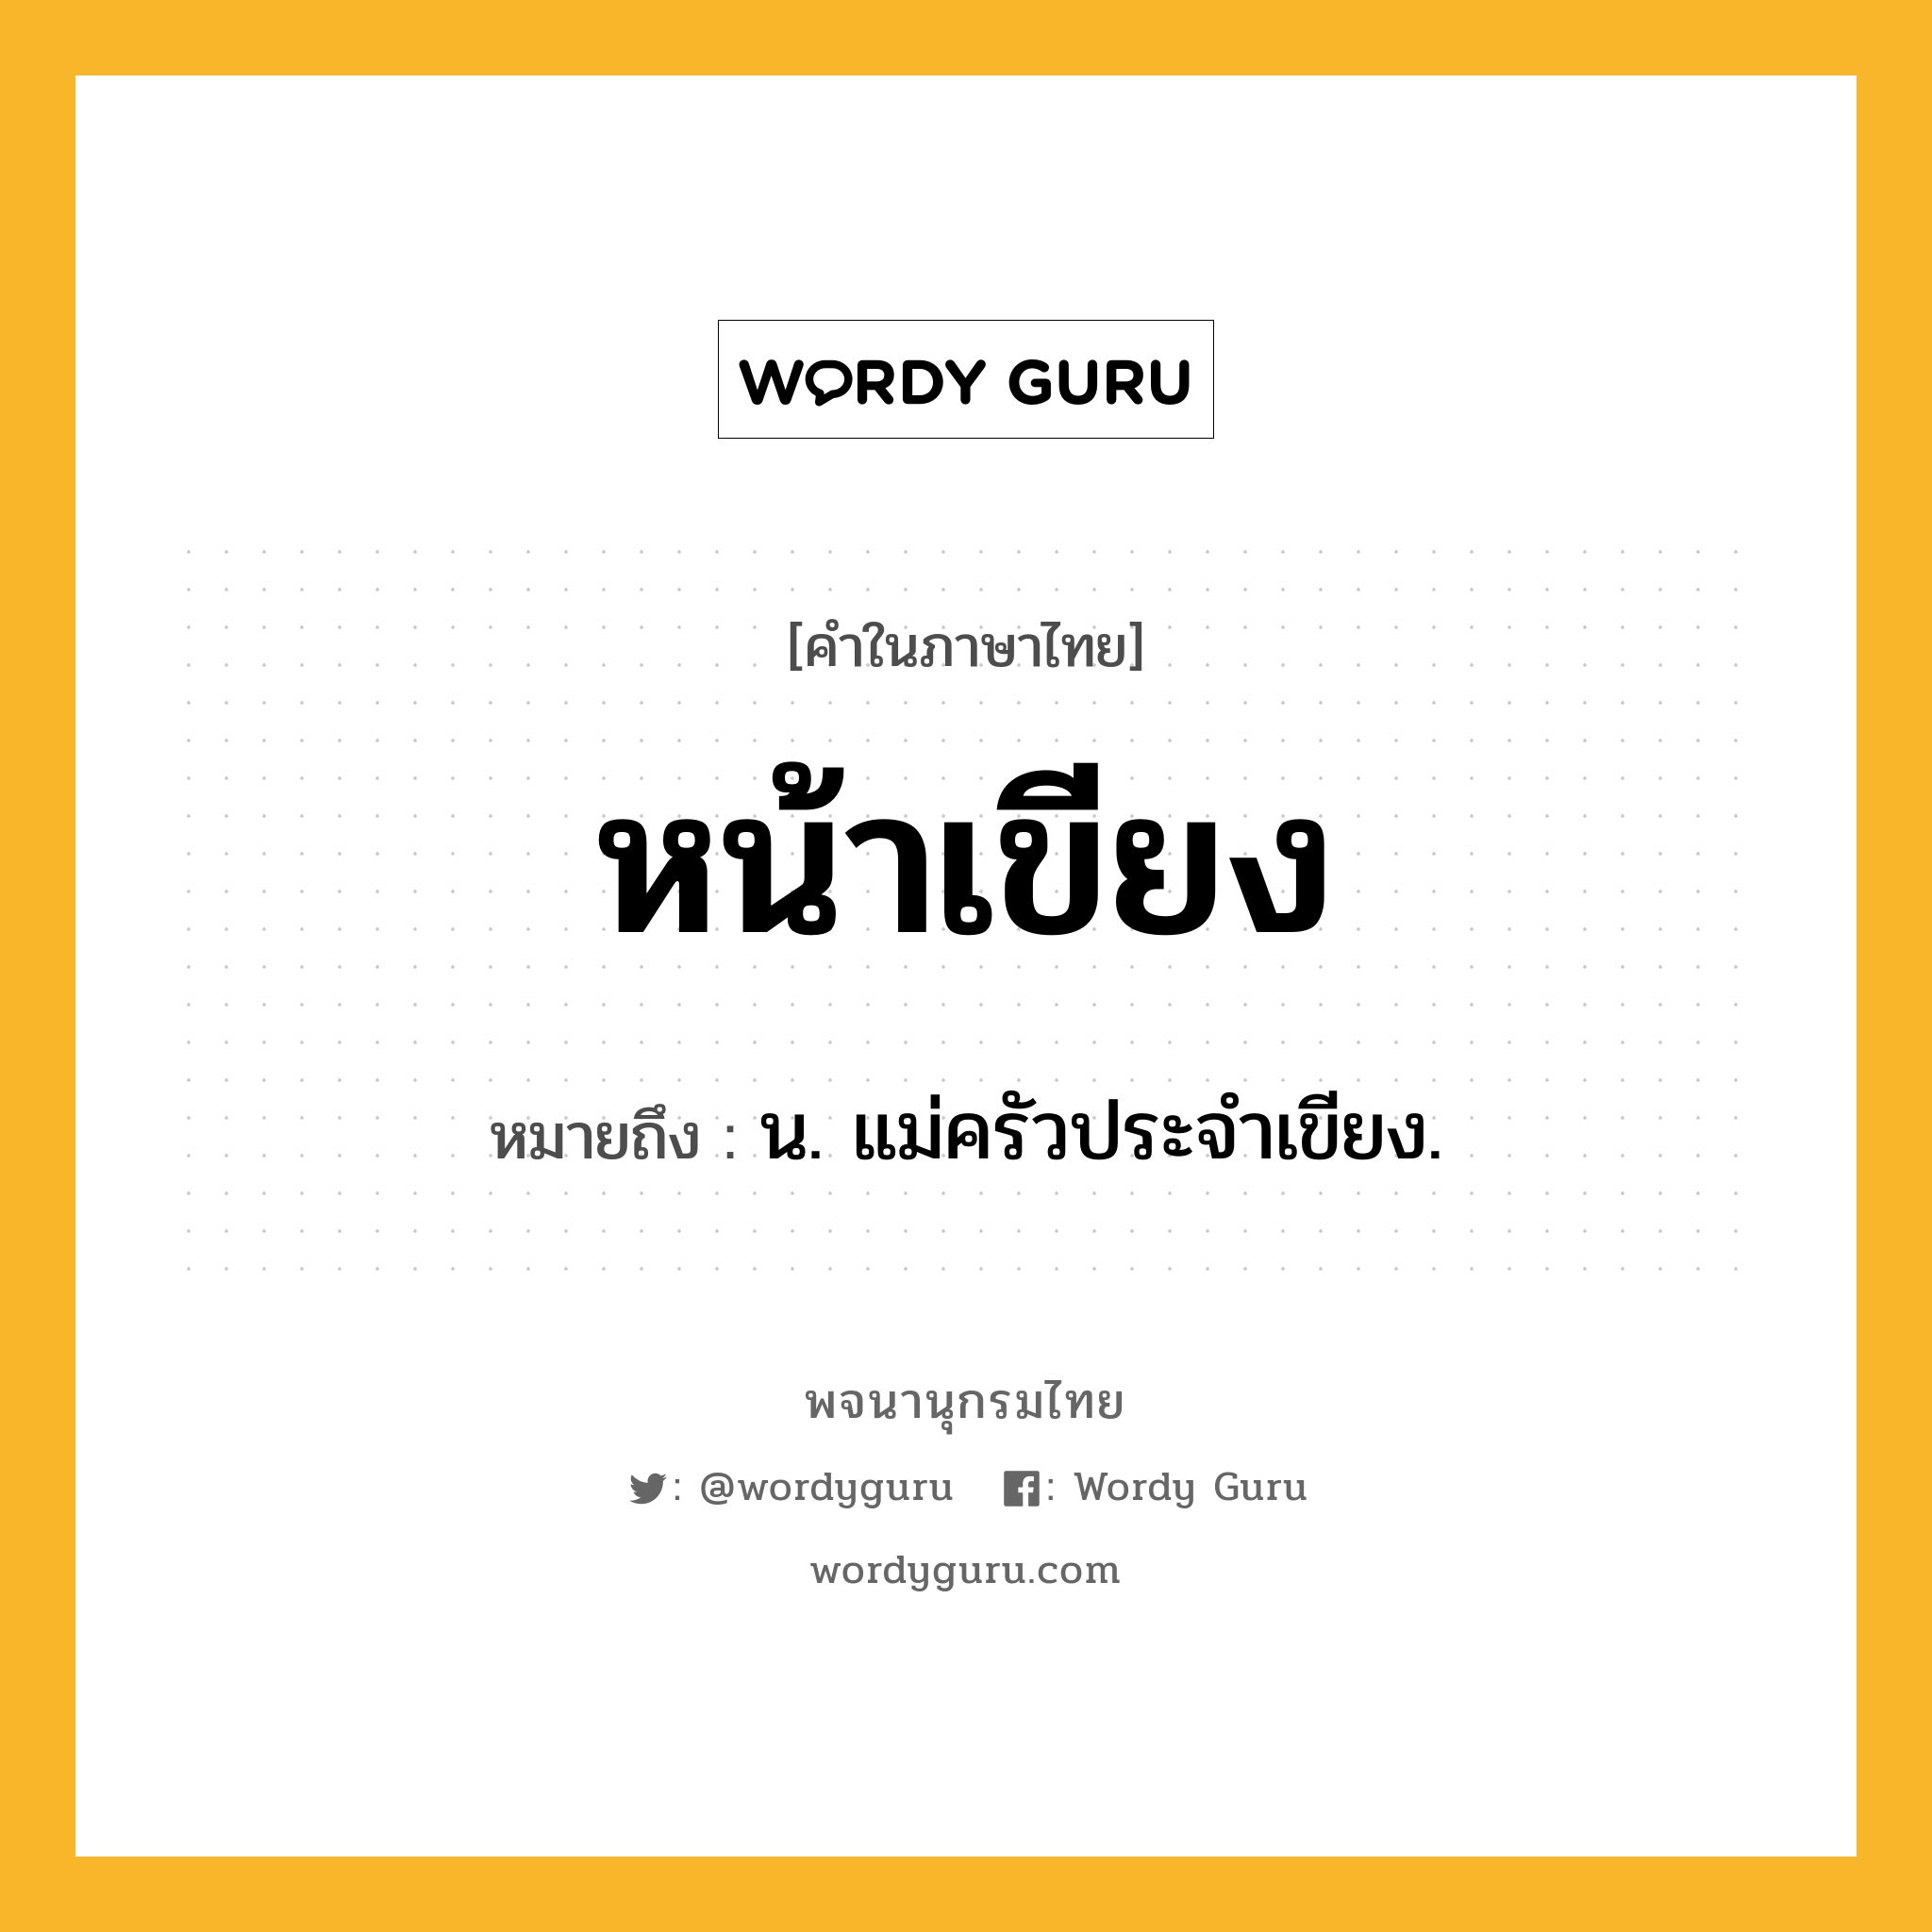 หน้าเขียง หมายถึงอะไร?, คำในภาษาไทย หน้าเขียง หมายถึง น. แม่ครัวประจำเขียง.